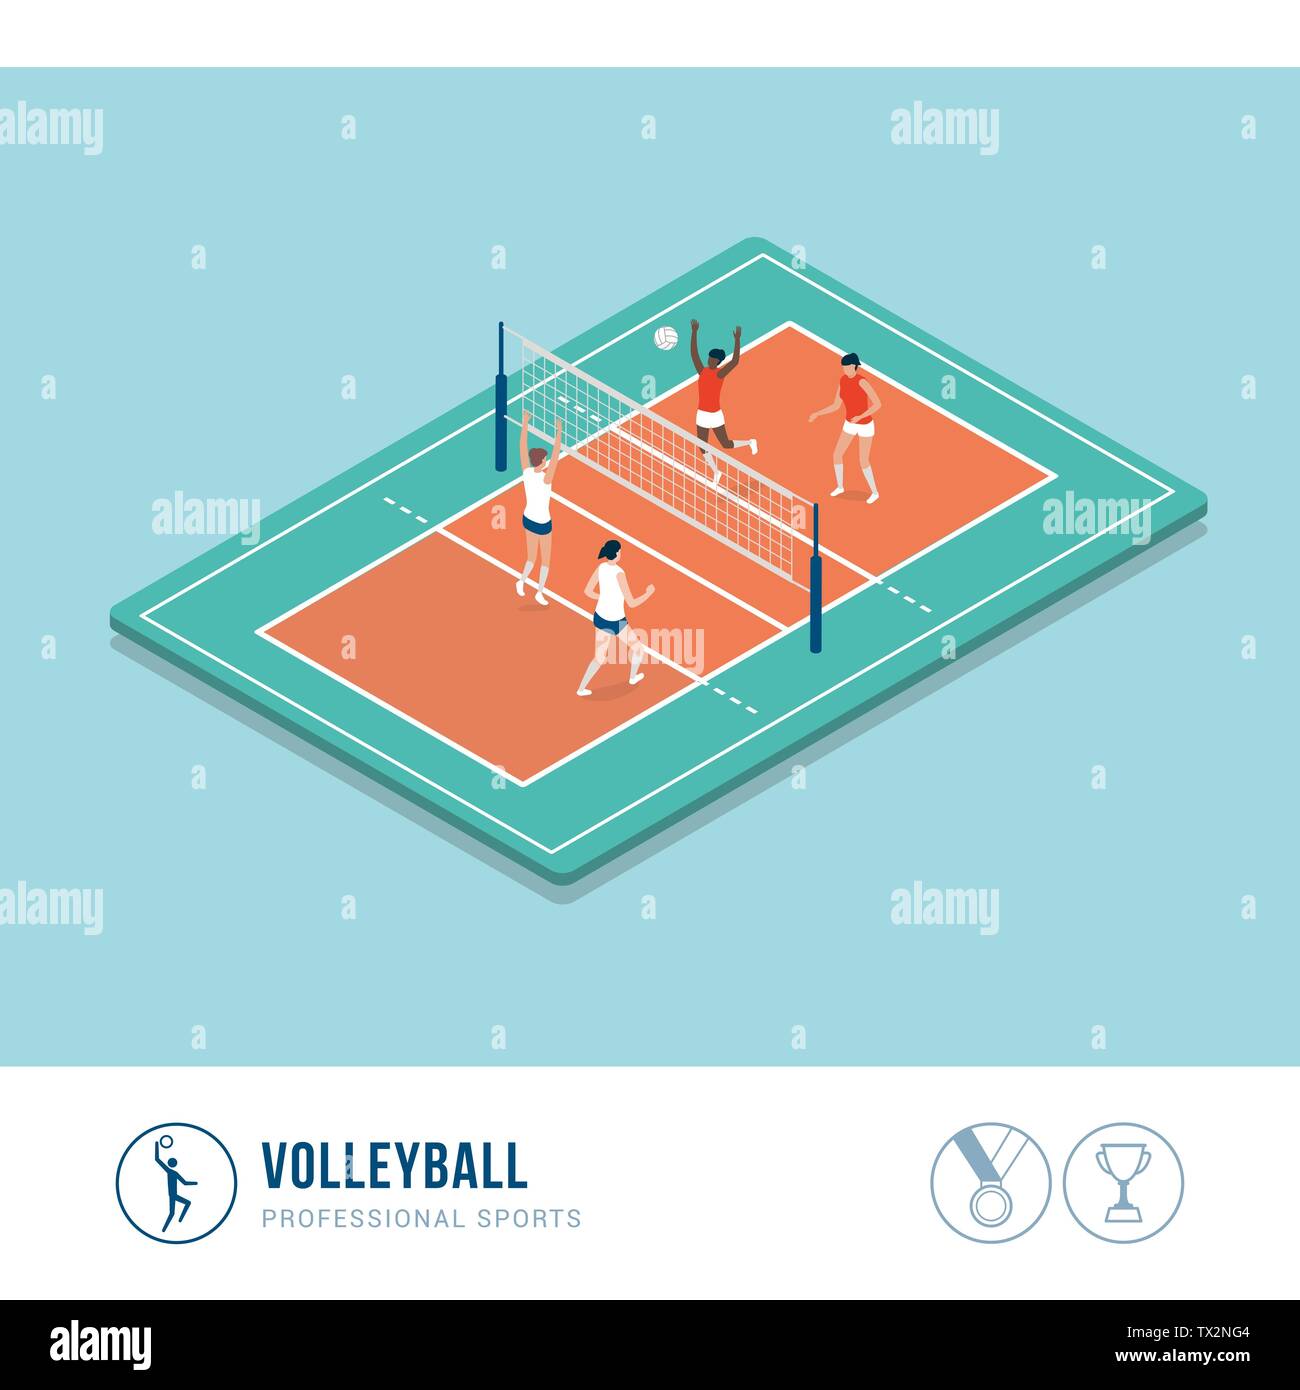 La competencia profesional de deportes: voleibol coinciden con las mujeres jugadoras Ilustración del Vector